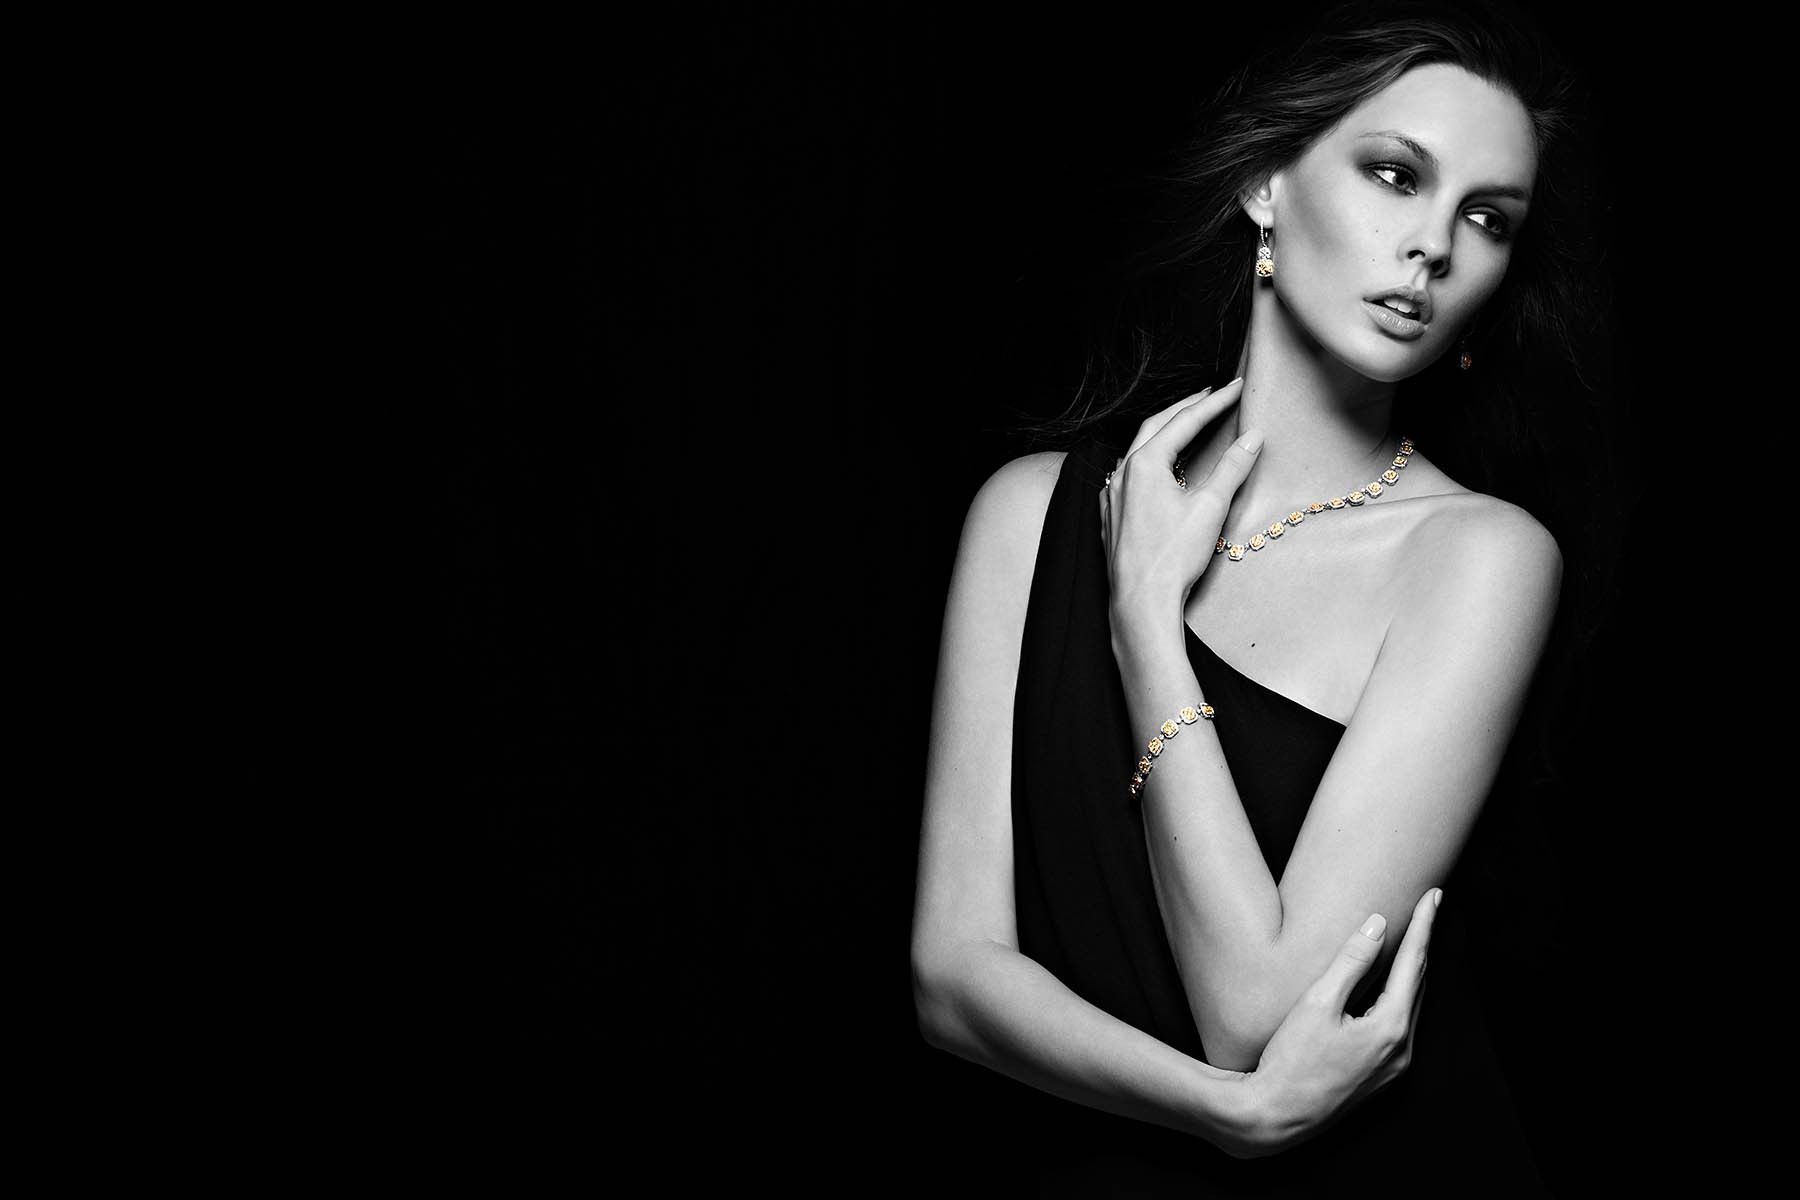 Model: Chloe LaslierClient: Diamonds International